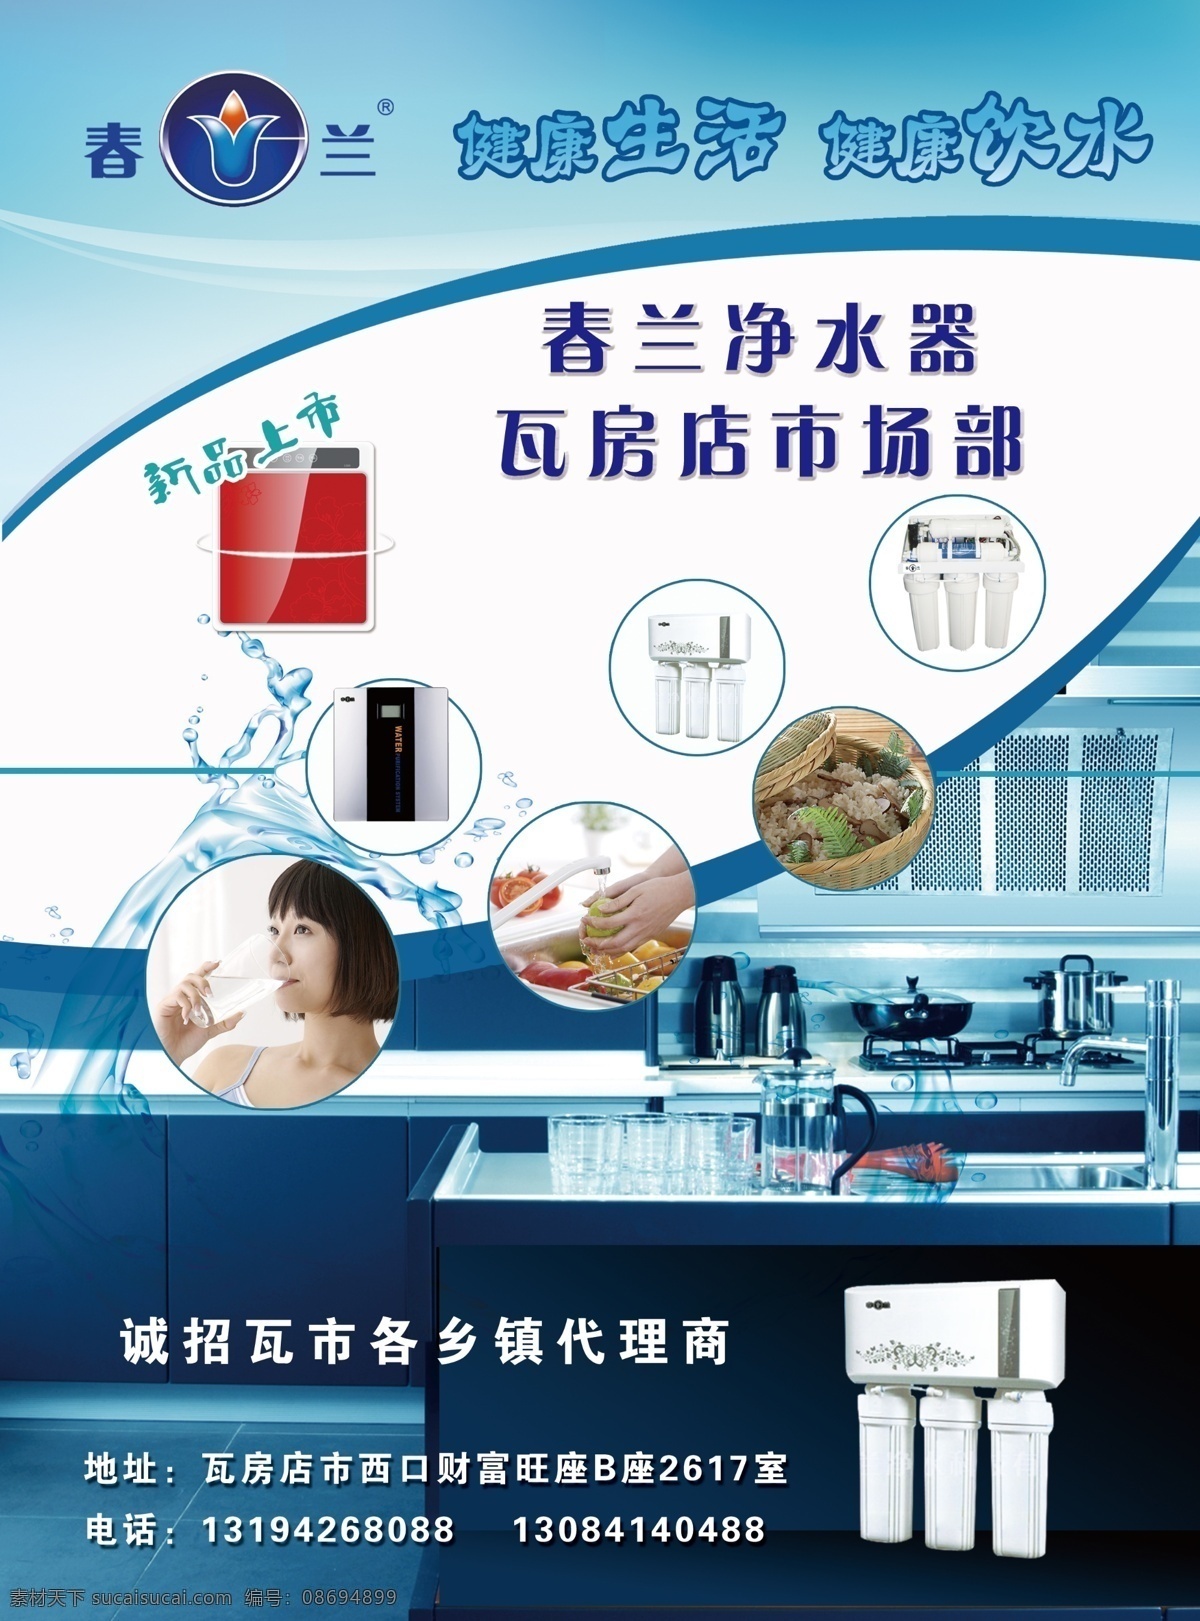 春兰净水器 新品上市 喝水 水果 米饭 厨房 水 dm宣传单 广告设计模板 源文件